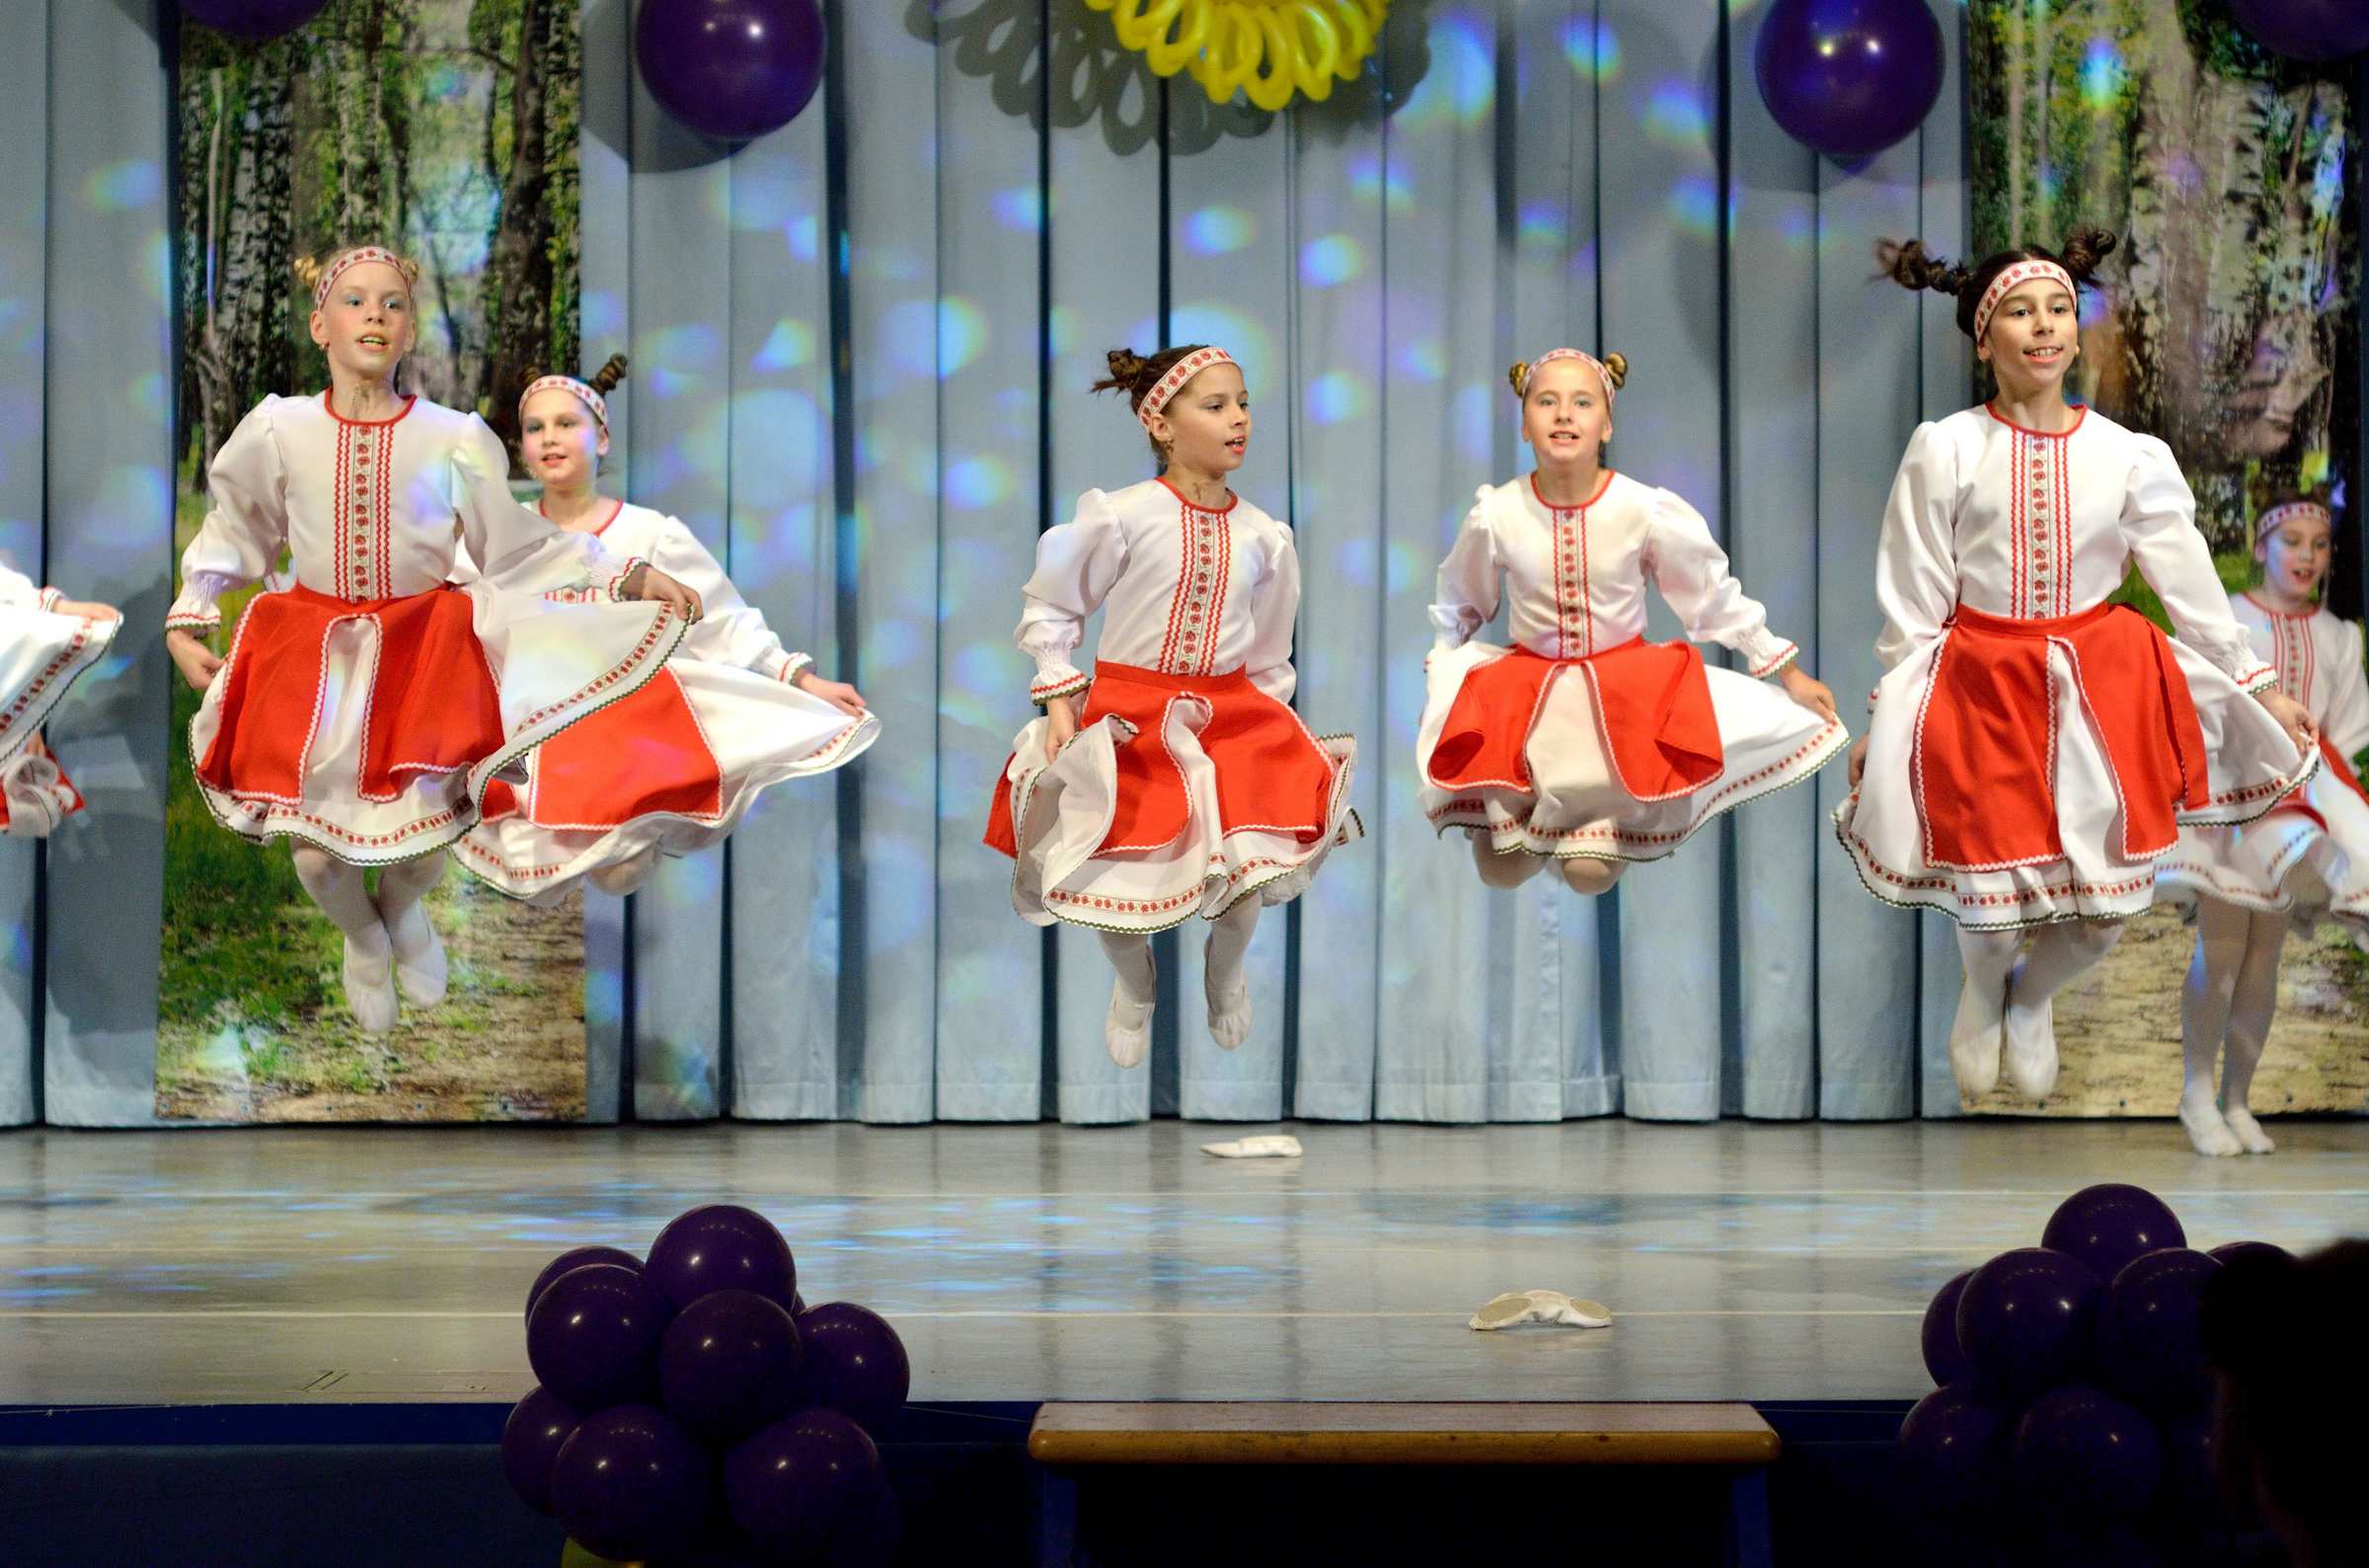 Отчётный концерт детского хореографического коллектива Солнцецвет. Белорусский танец «Козочка».